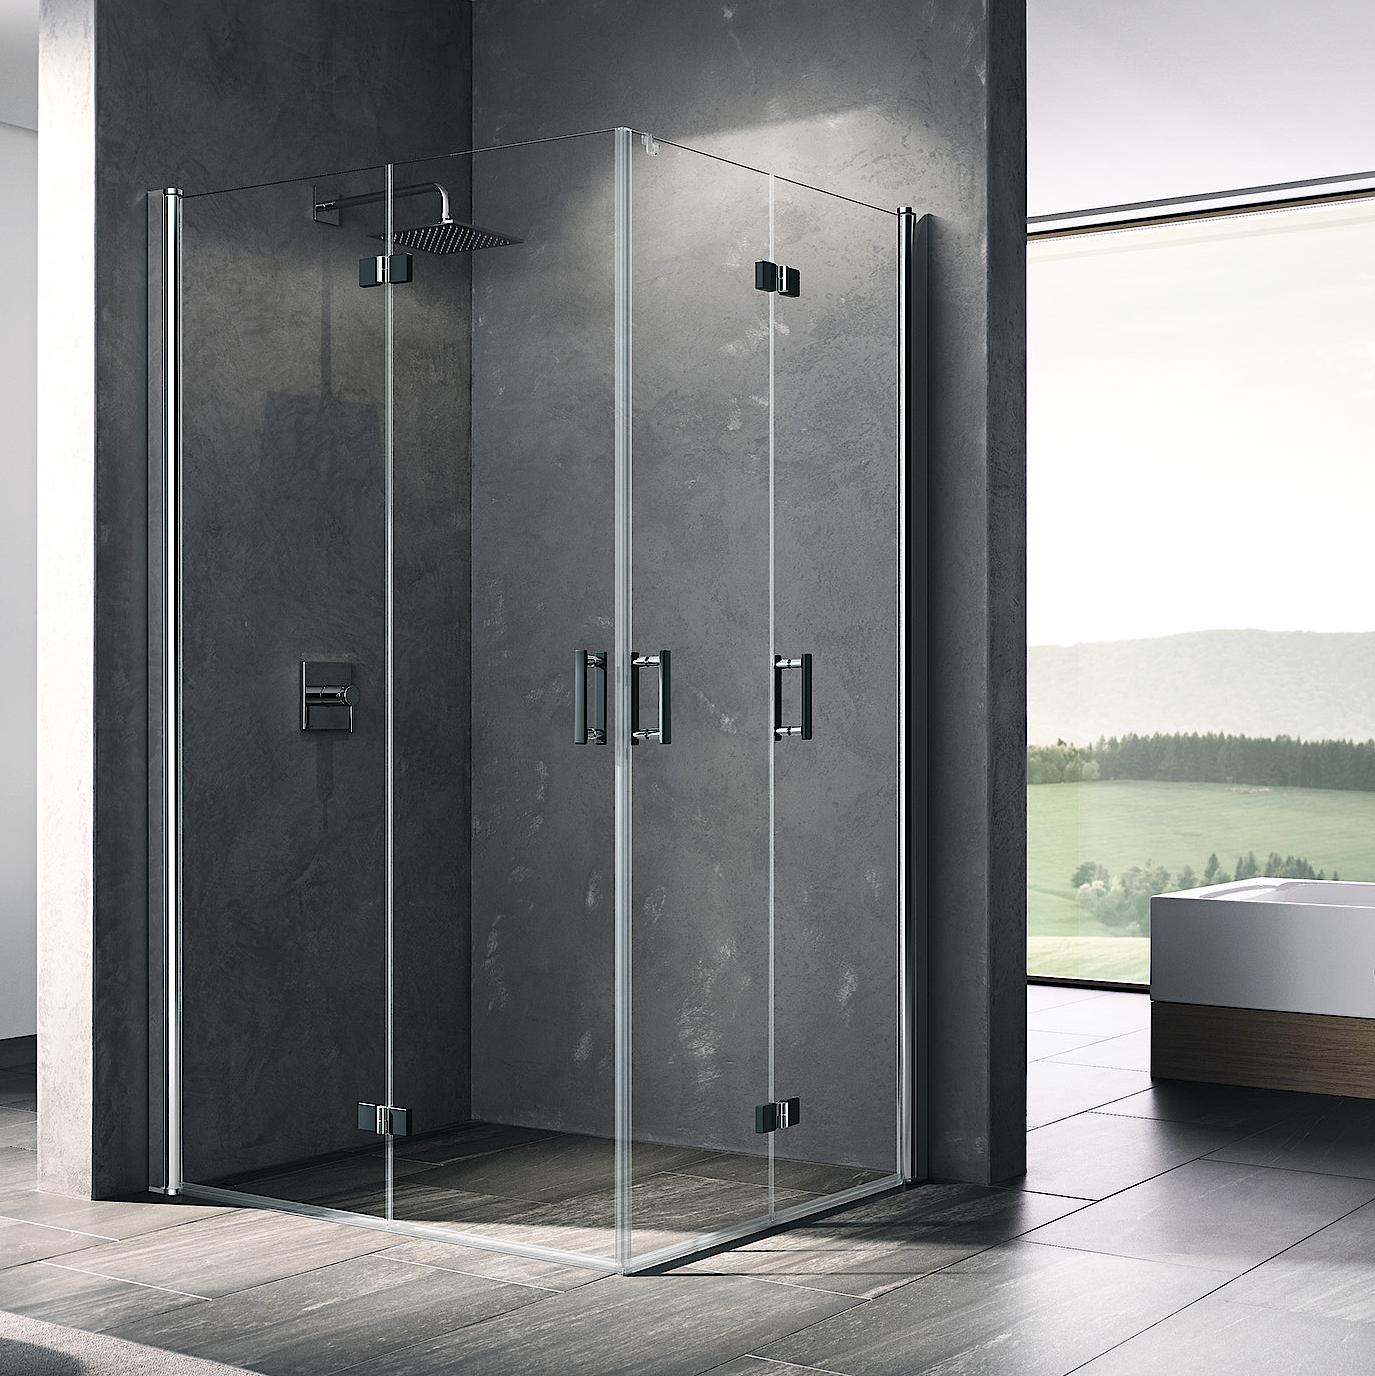 Profilowa kabina prysznicowa Kermi DIGA, wejście narożne 2-częściowe (drzwi składane) – 1 połowa